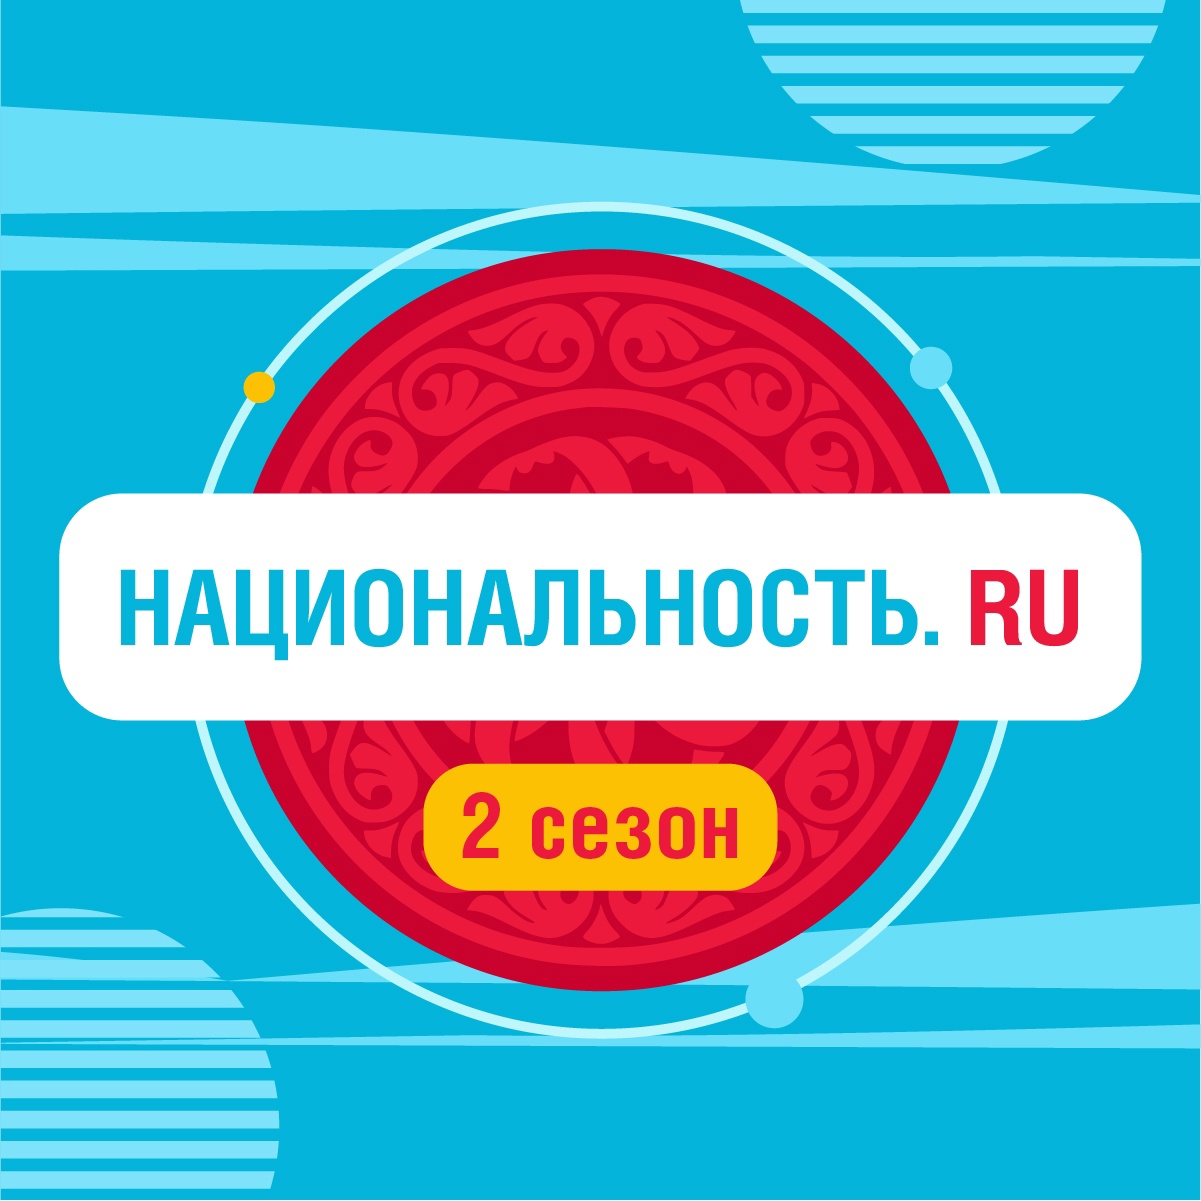 Проект «Национальность.ru» 2 сезон.